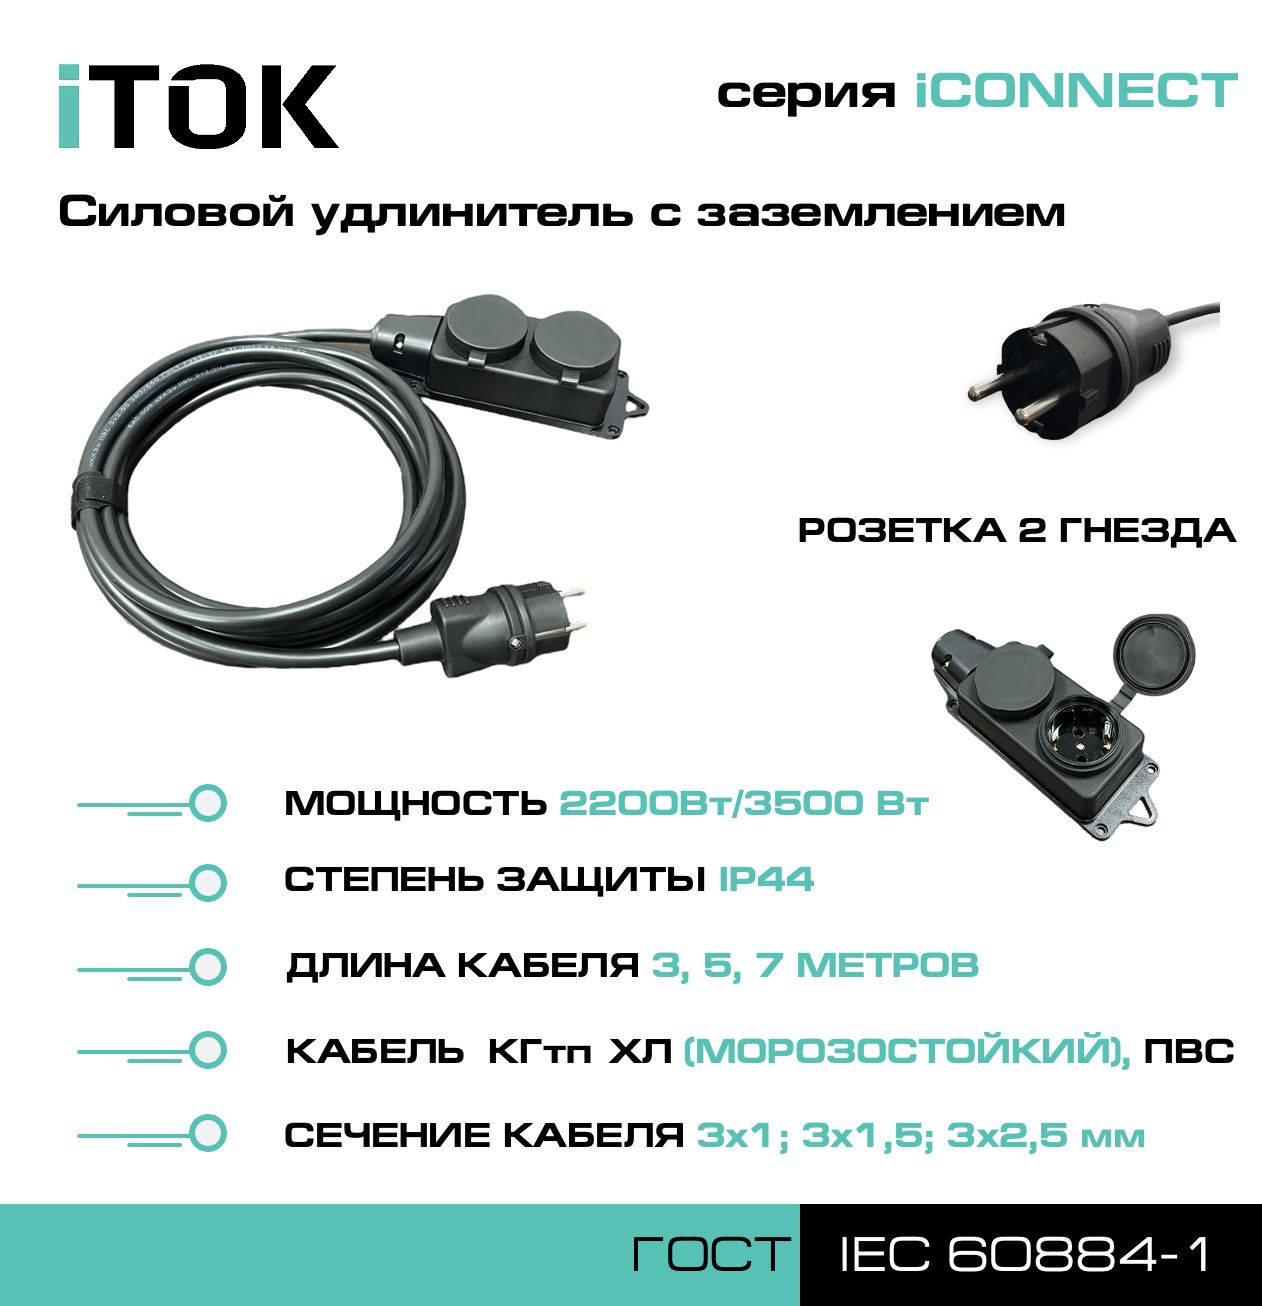 Удлинитель с заземлением серии iTOK iCONNECT ПВС 3х2,5 мм 2 гнезда IP44 5 м